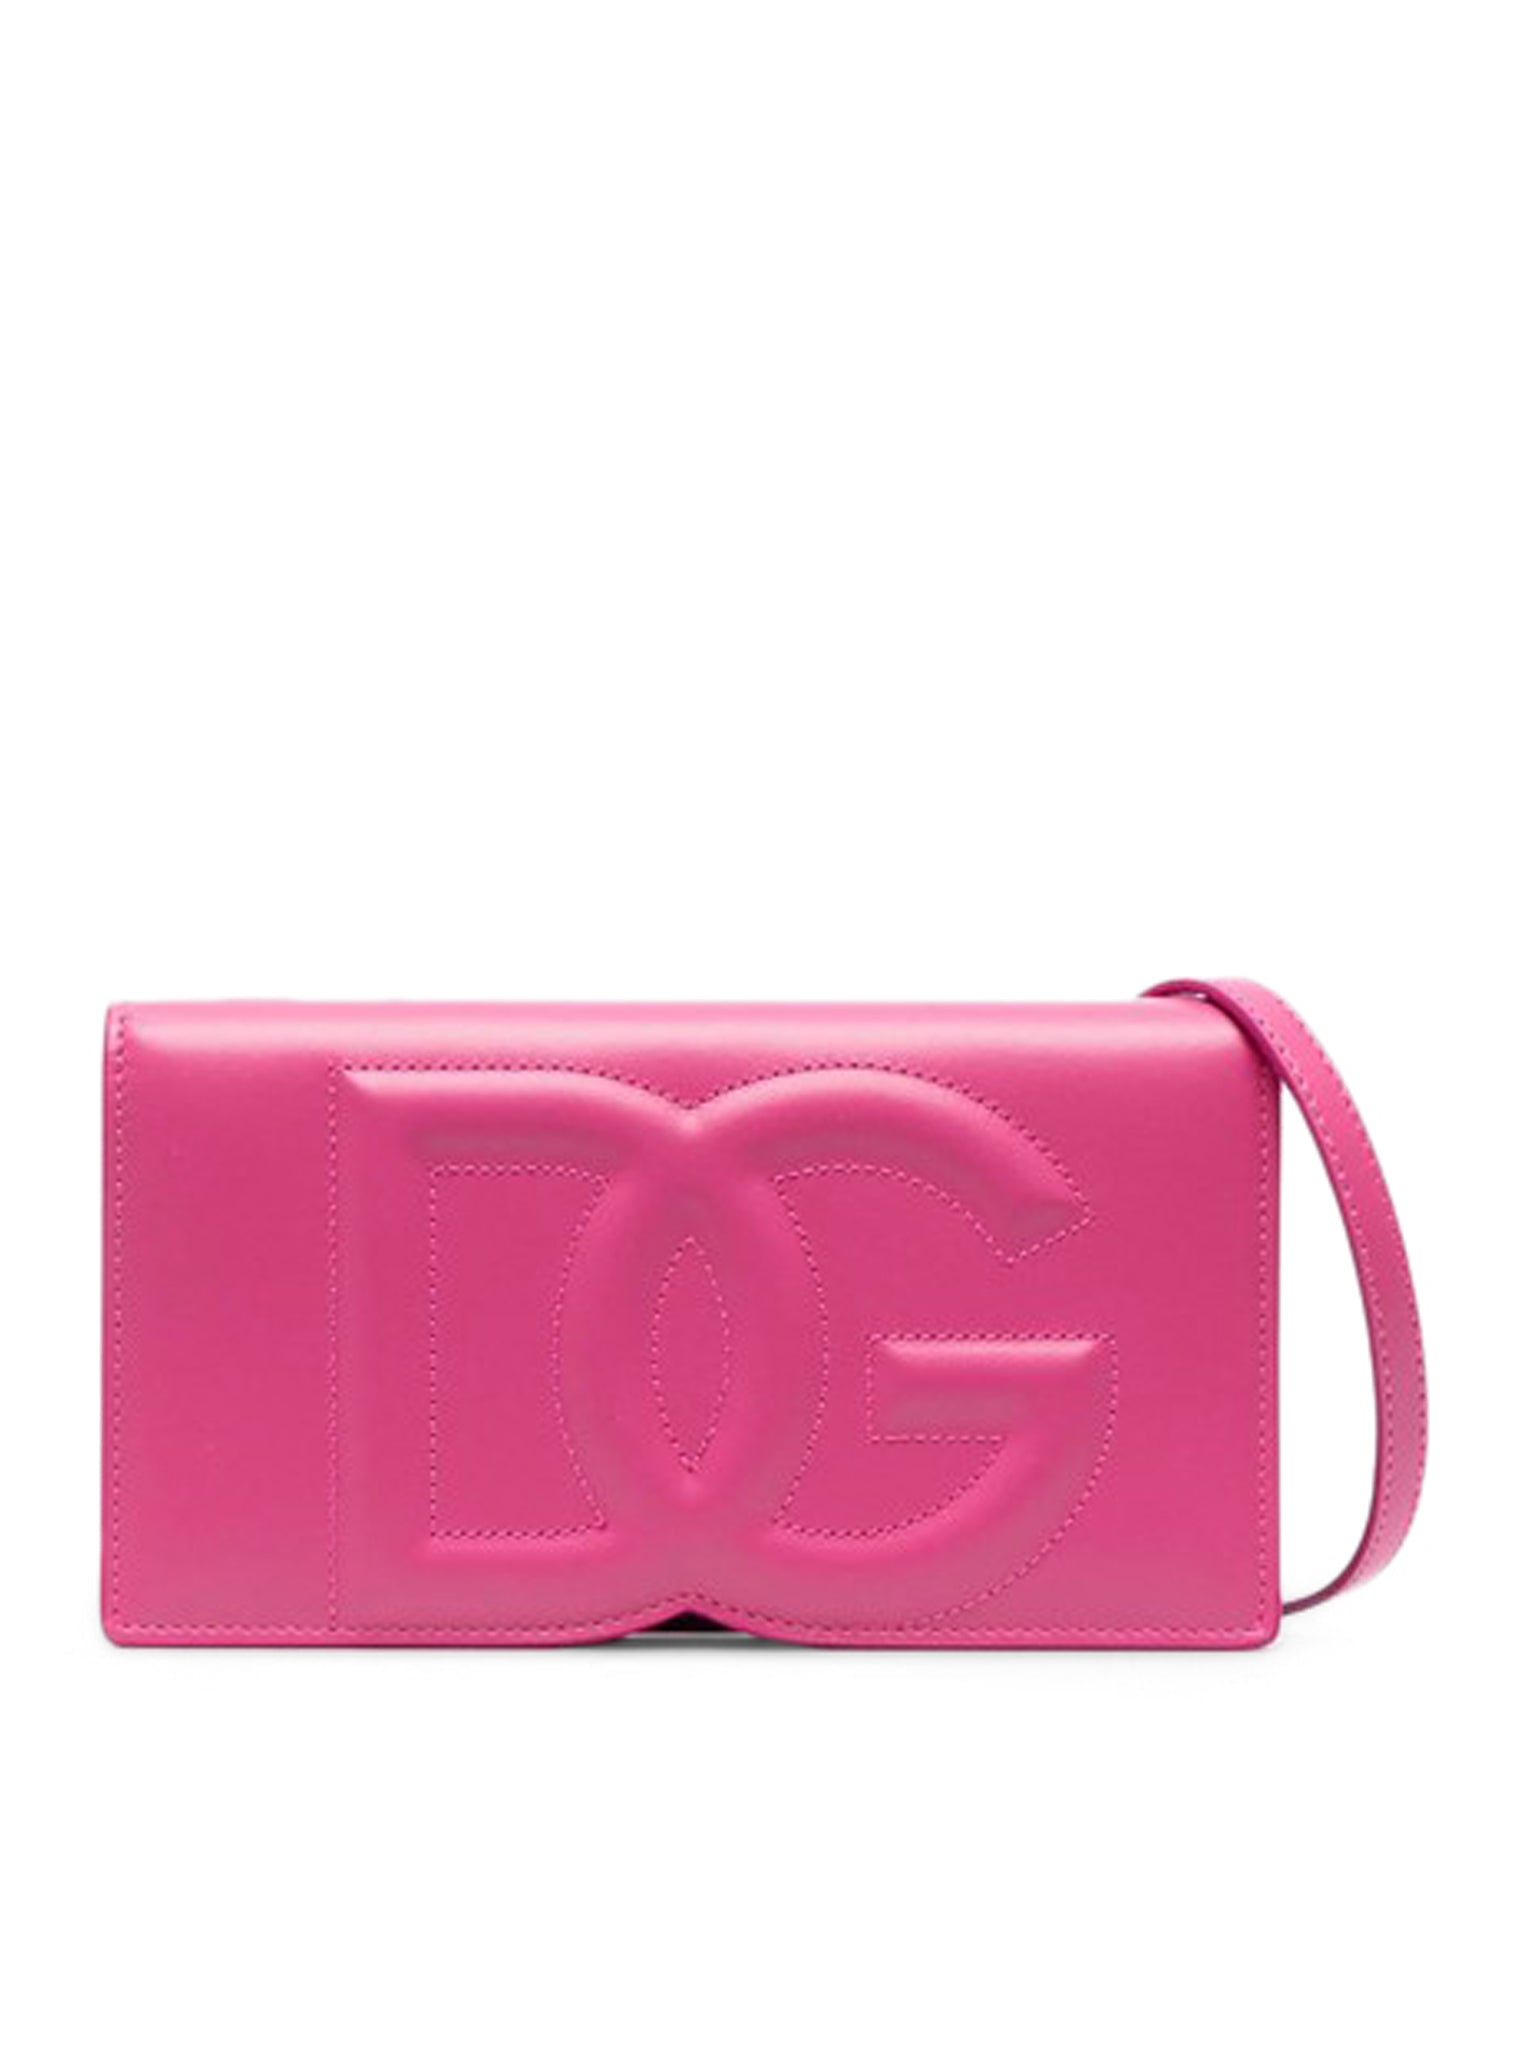 Shoulder bag with DG logo